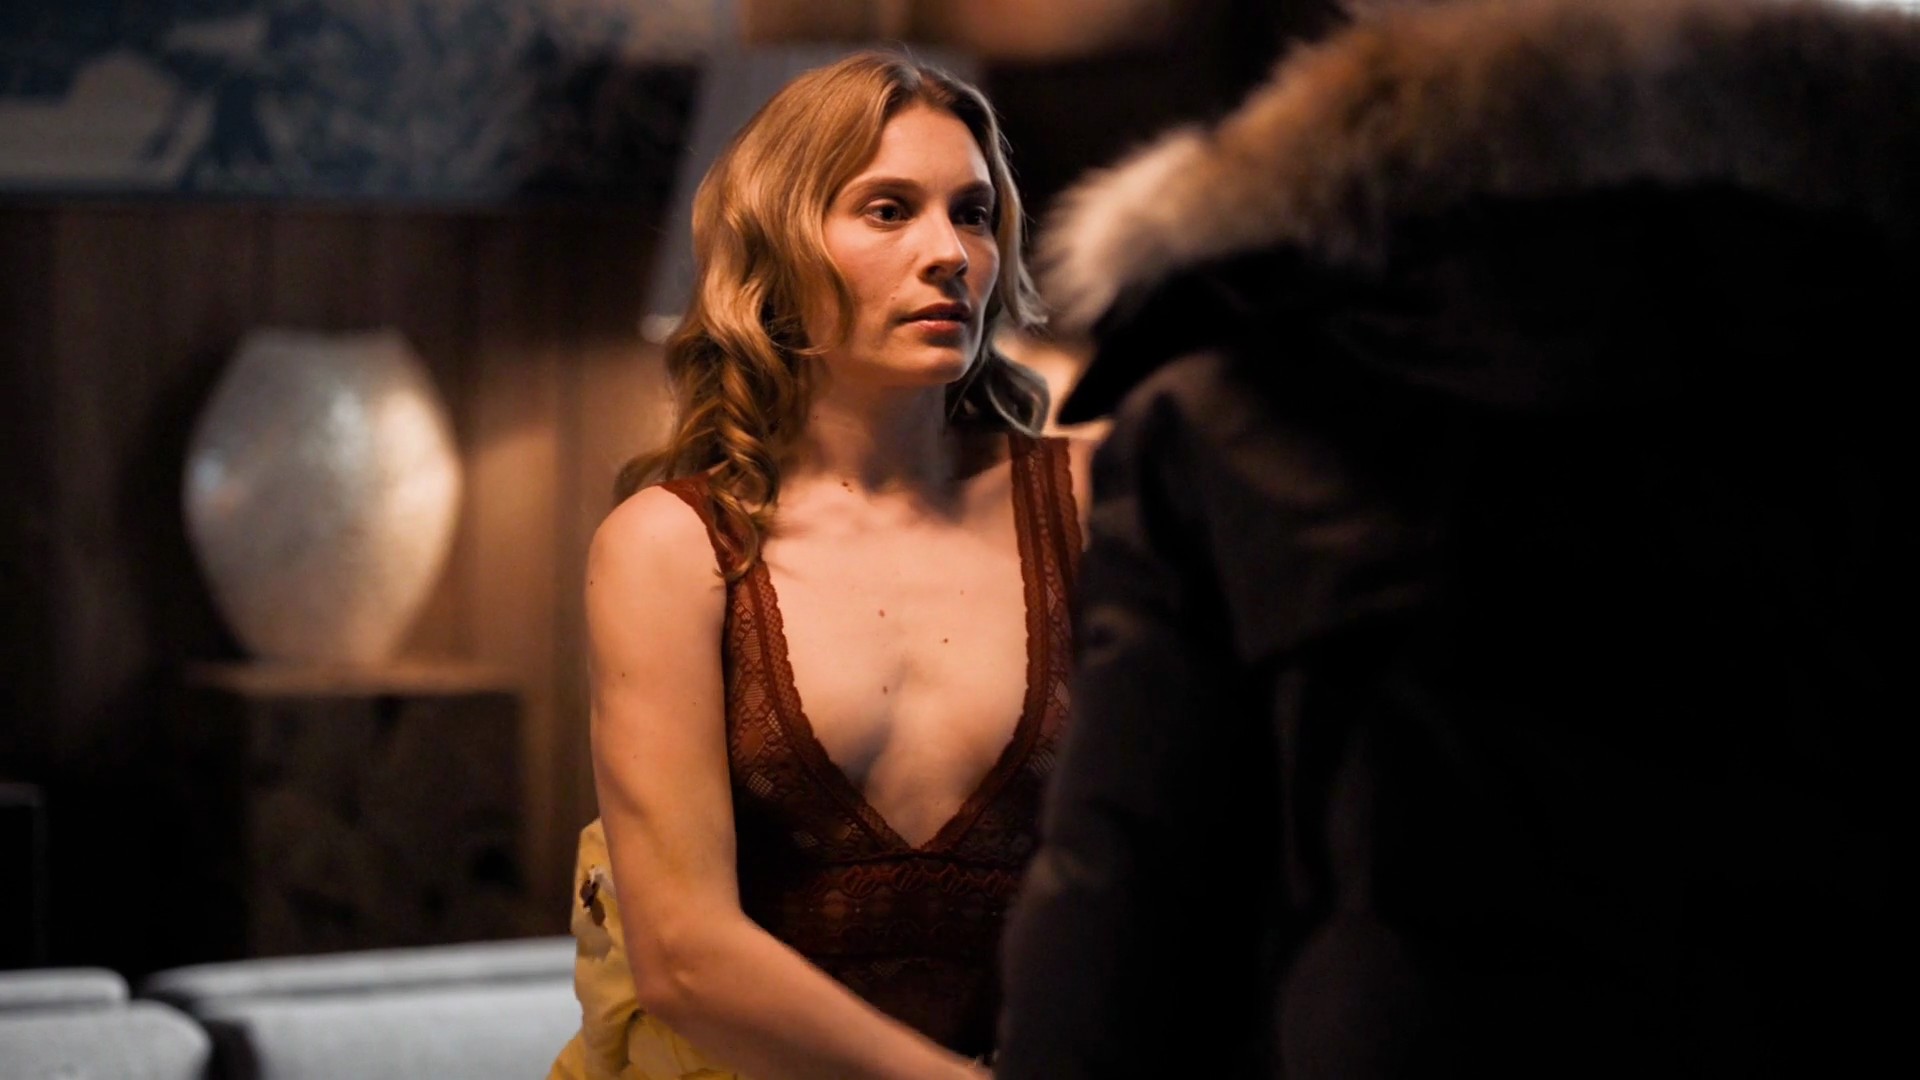 In the last scene Aliette Opheim is undressing in the bathroom as a man wat...